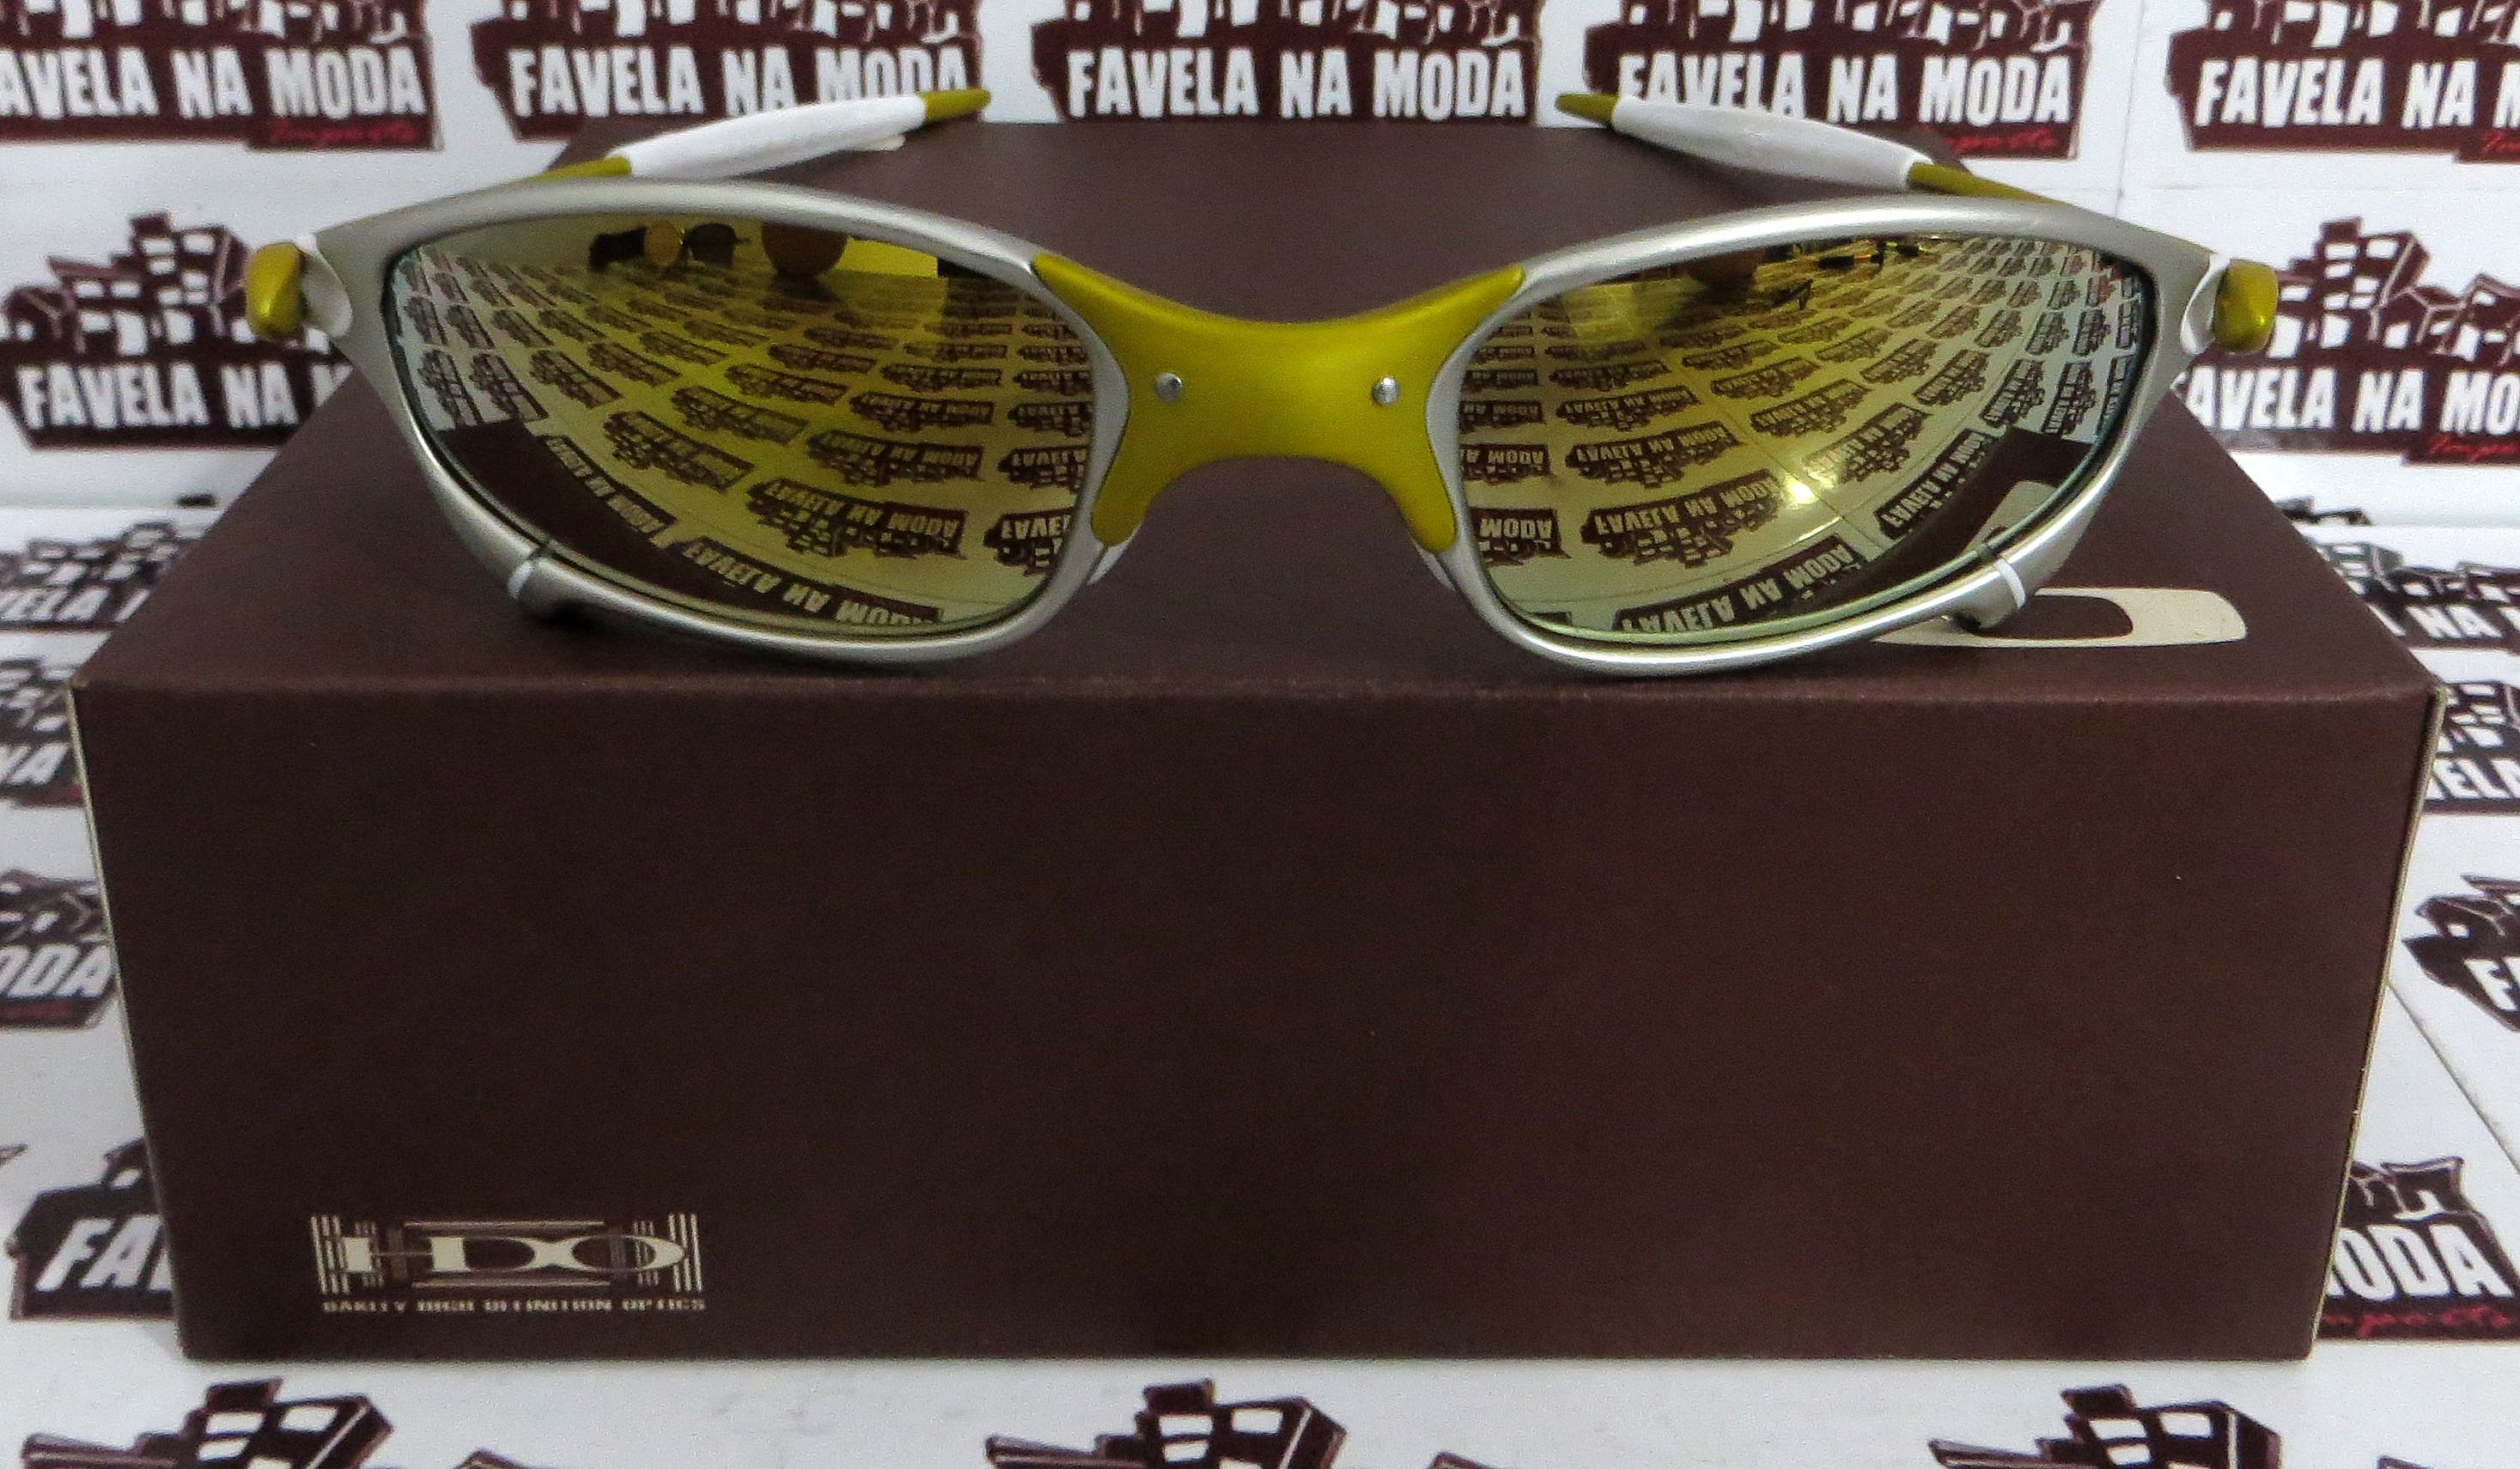 Óculos Oakley Double xx - X-Metal / Clear Azul / Borrachinhas Azul - Favela  na Moda Imports